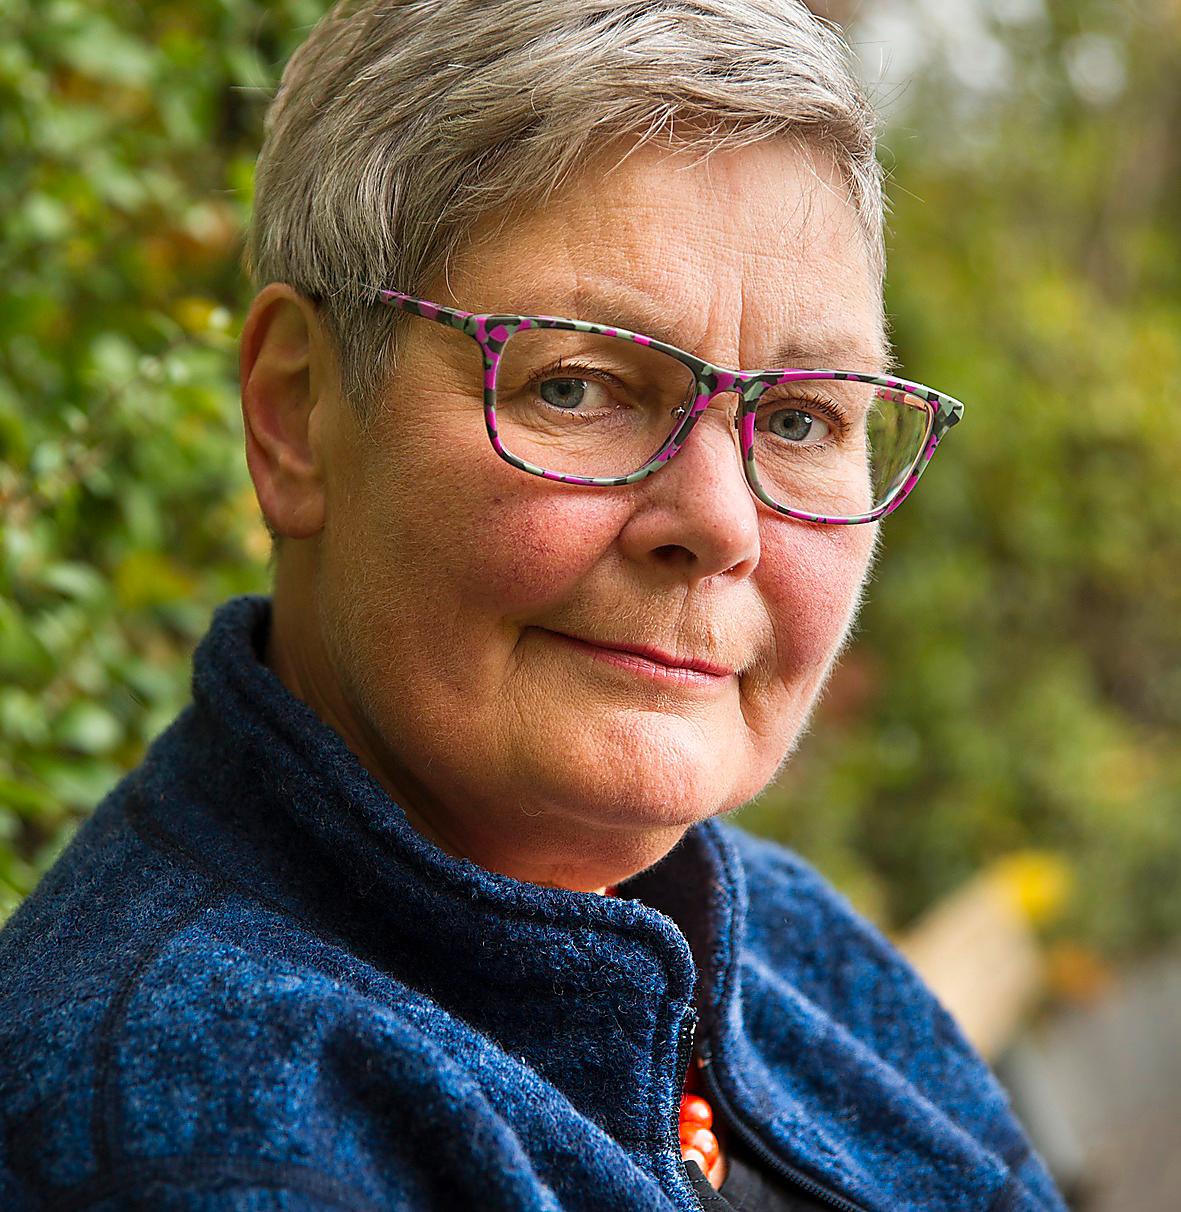 Maria Hamberg (född 1954) är en Sveriges få riktiga arbetarförfattare med lång erfarenhet från verkstadsgolvet. Nya boken är en julsaga.